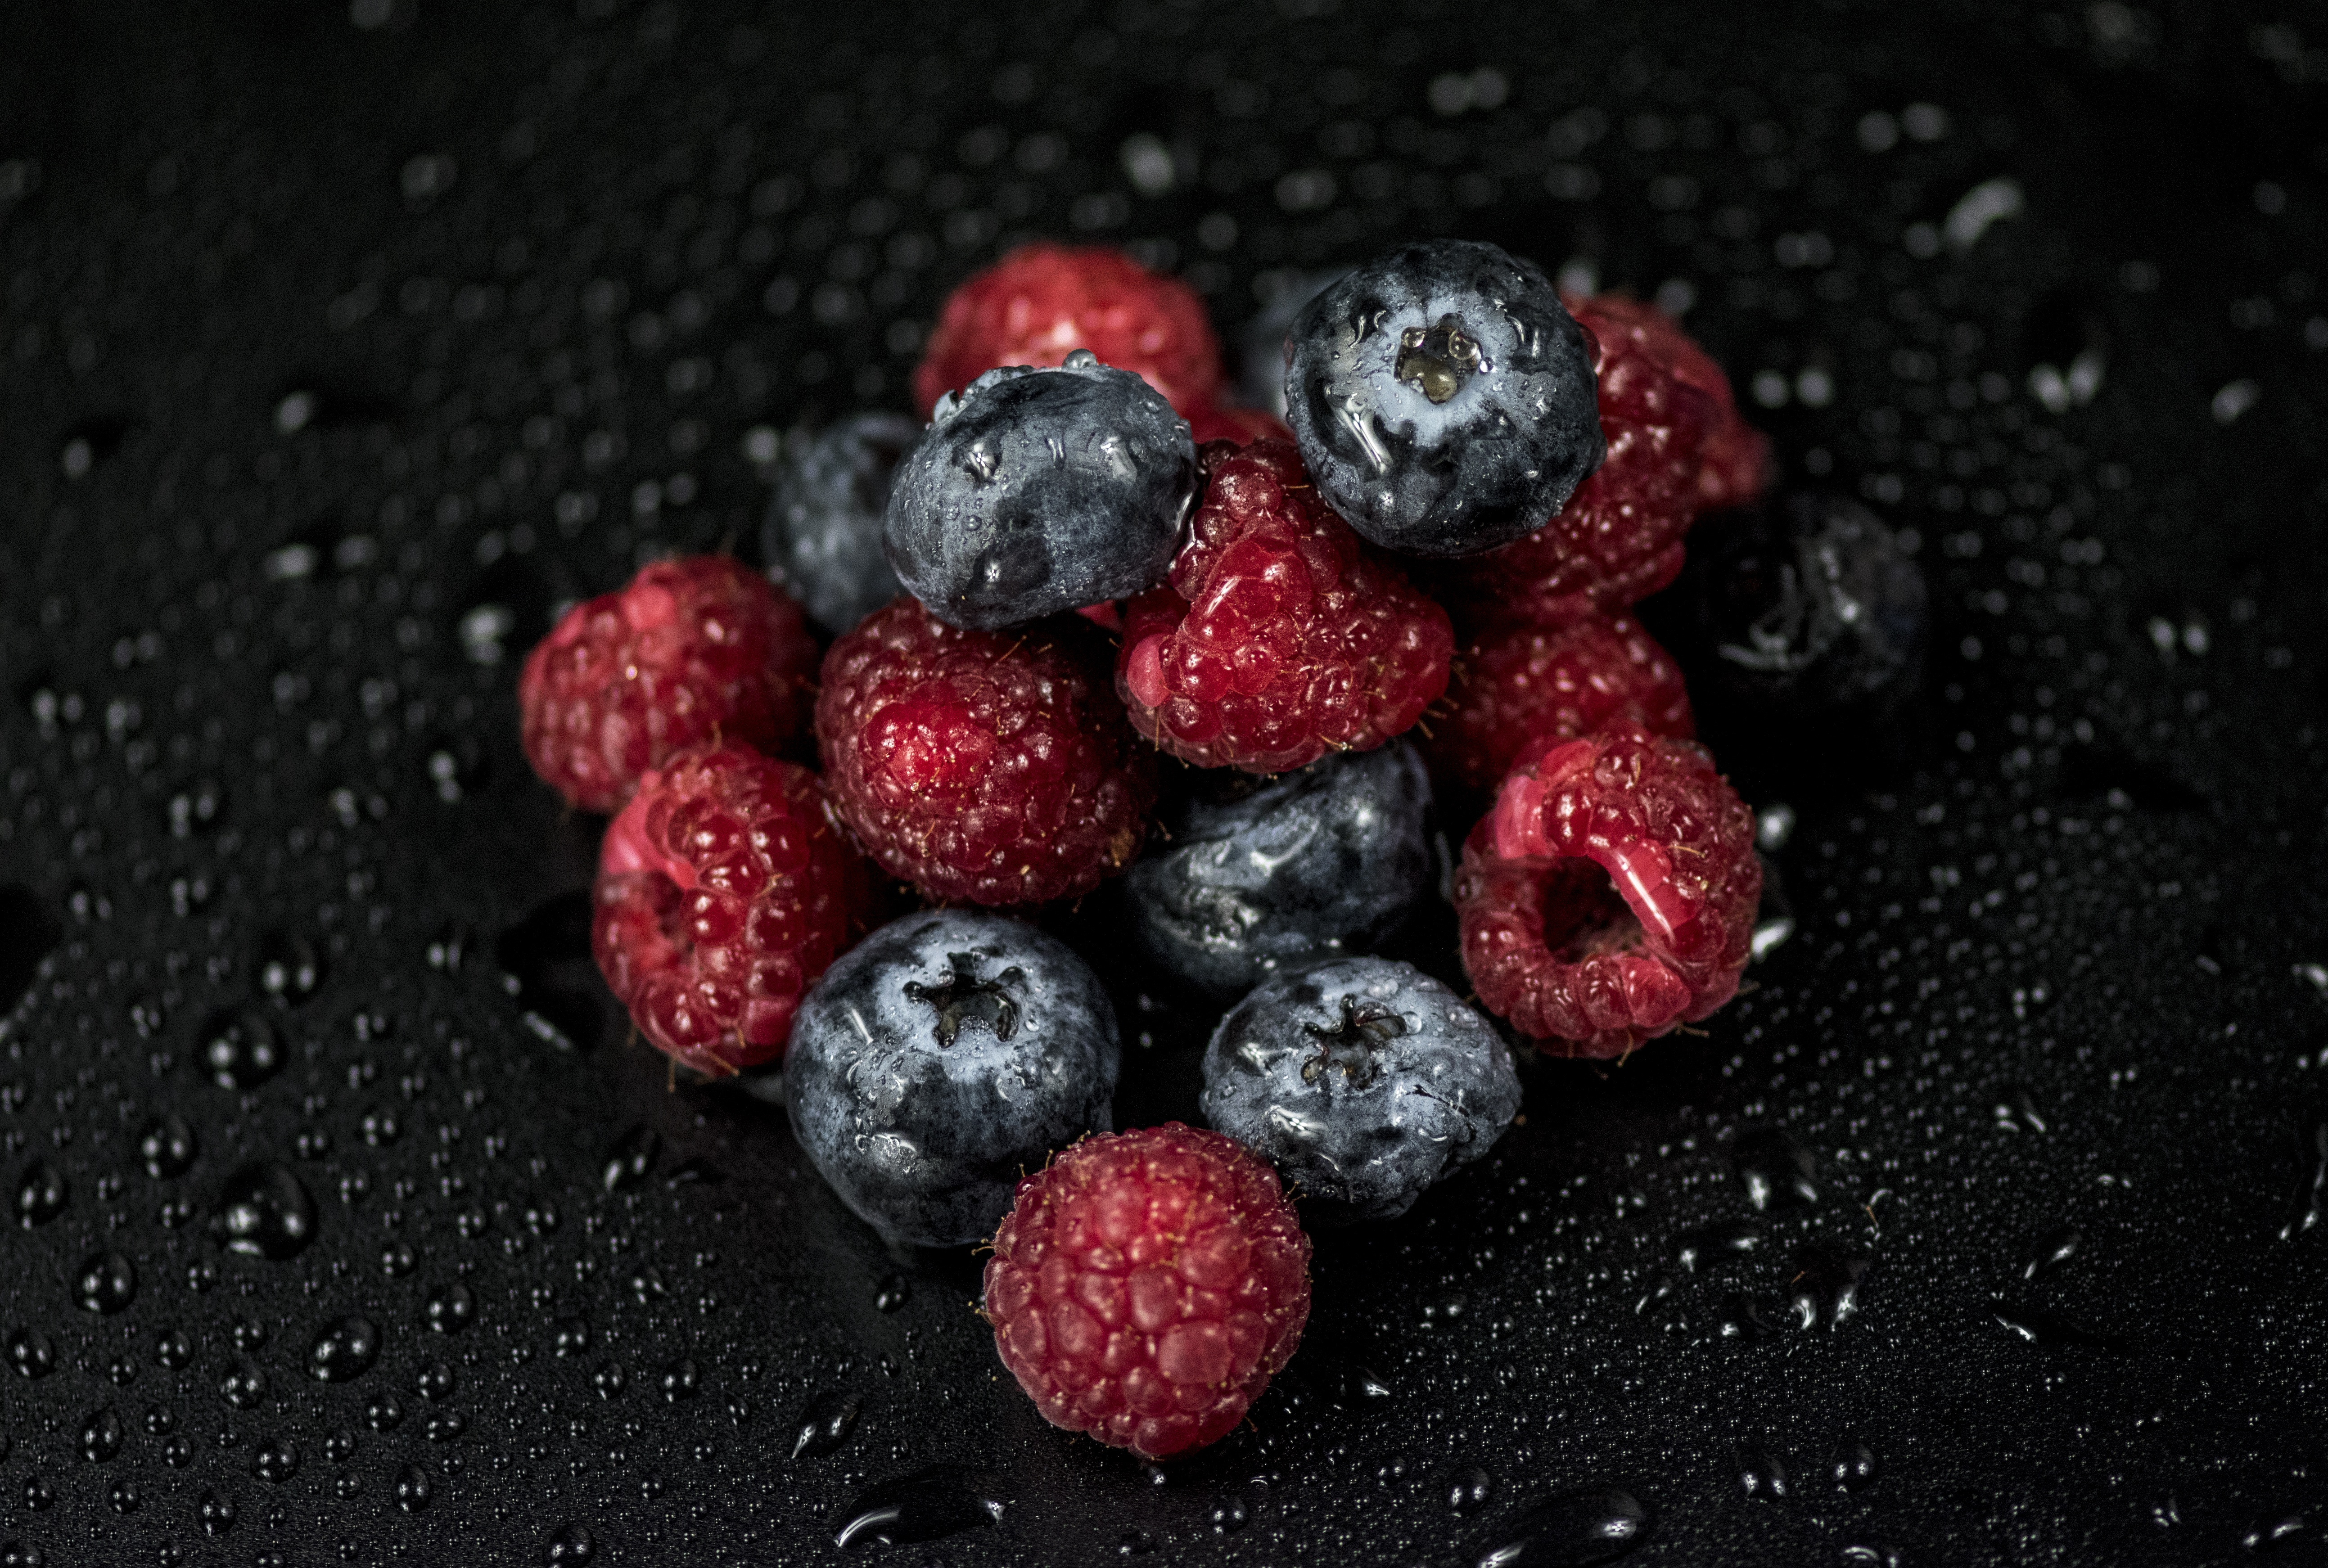 bilberries, raspberry, food, drops, berries